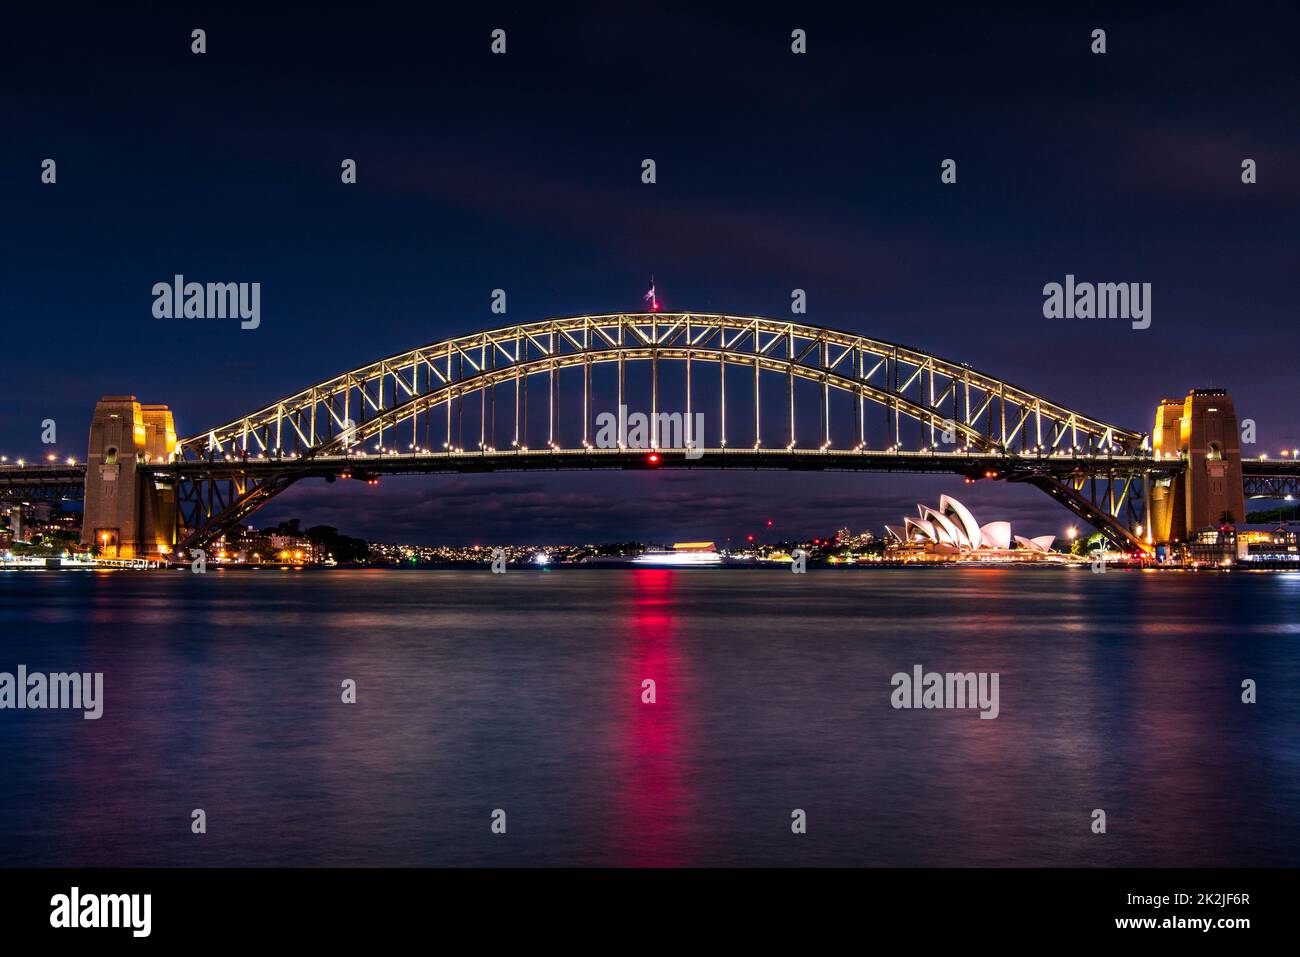 Le pont du port de Sydney et l'opéra illuminés le soir, à 21 mai 2022, Sydney, Australie. Banque D'Images